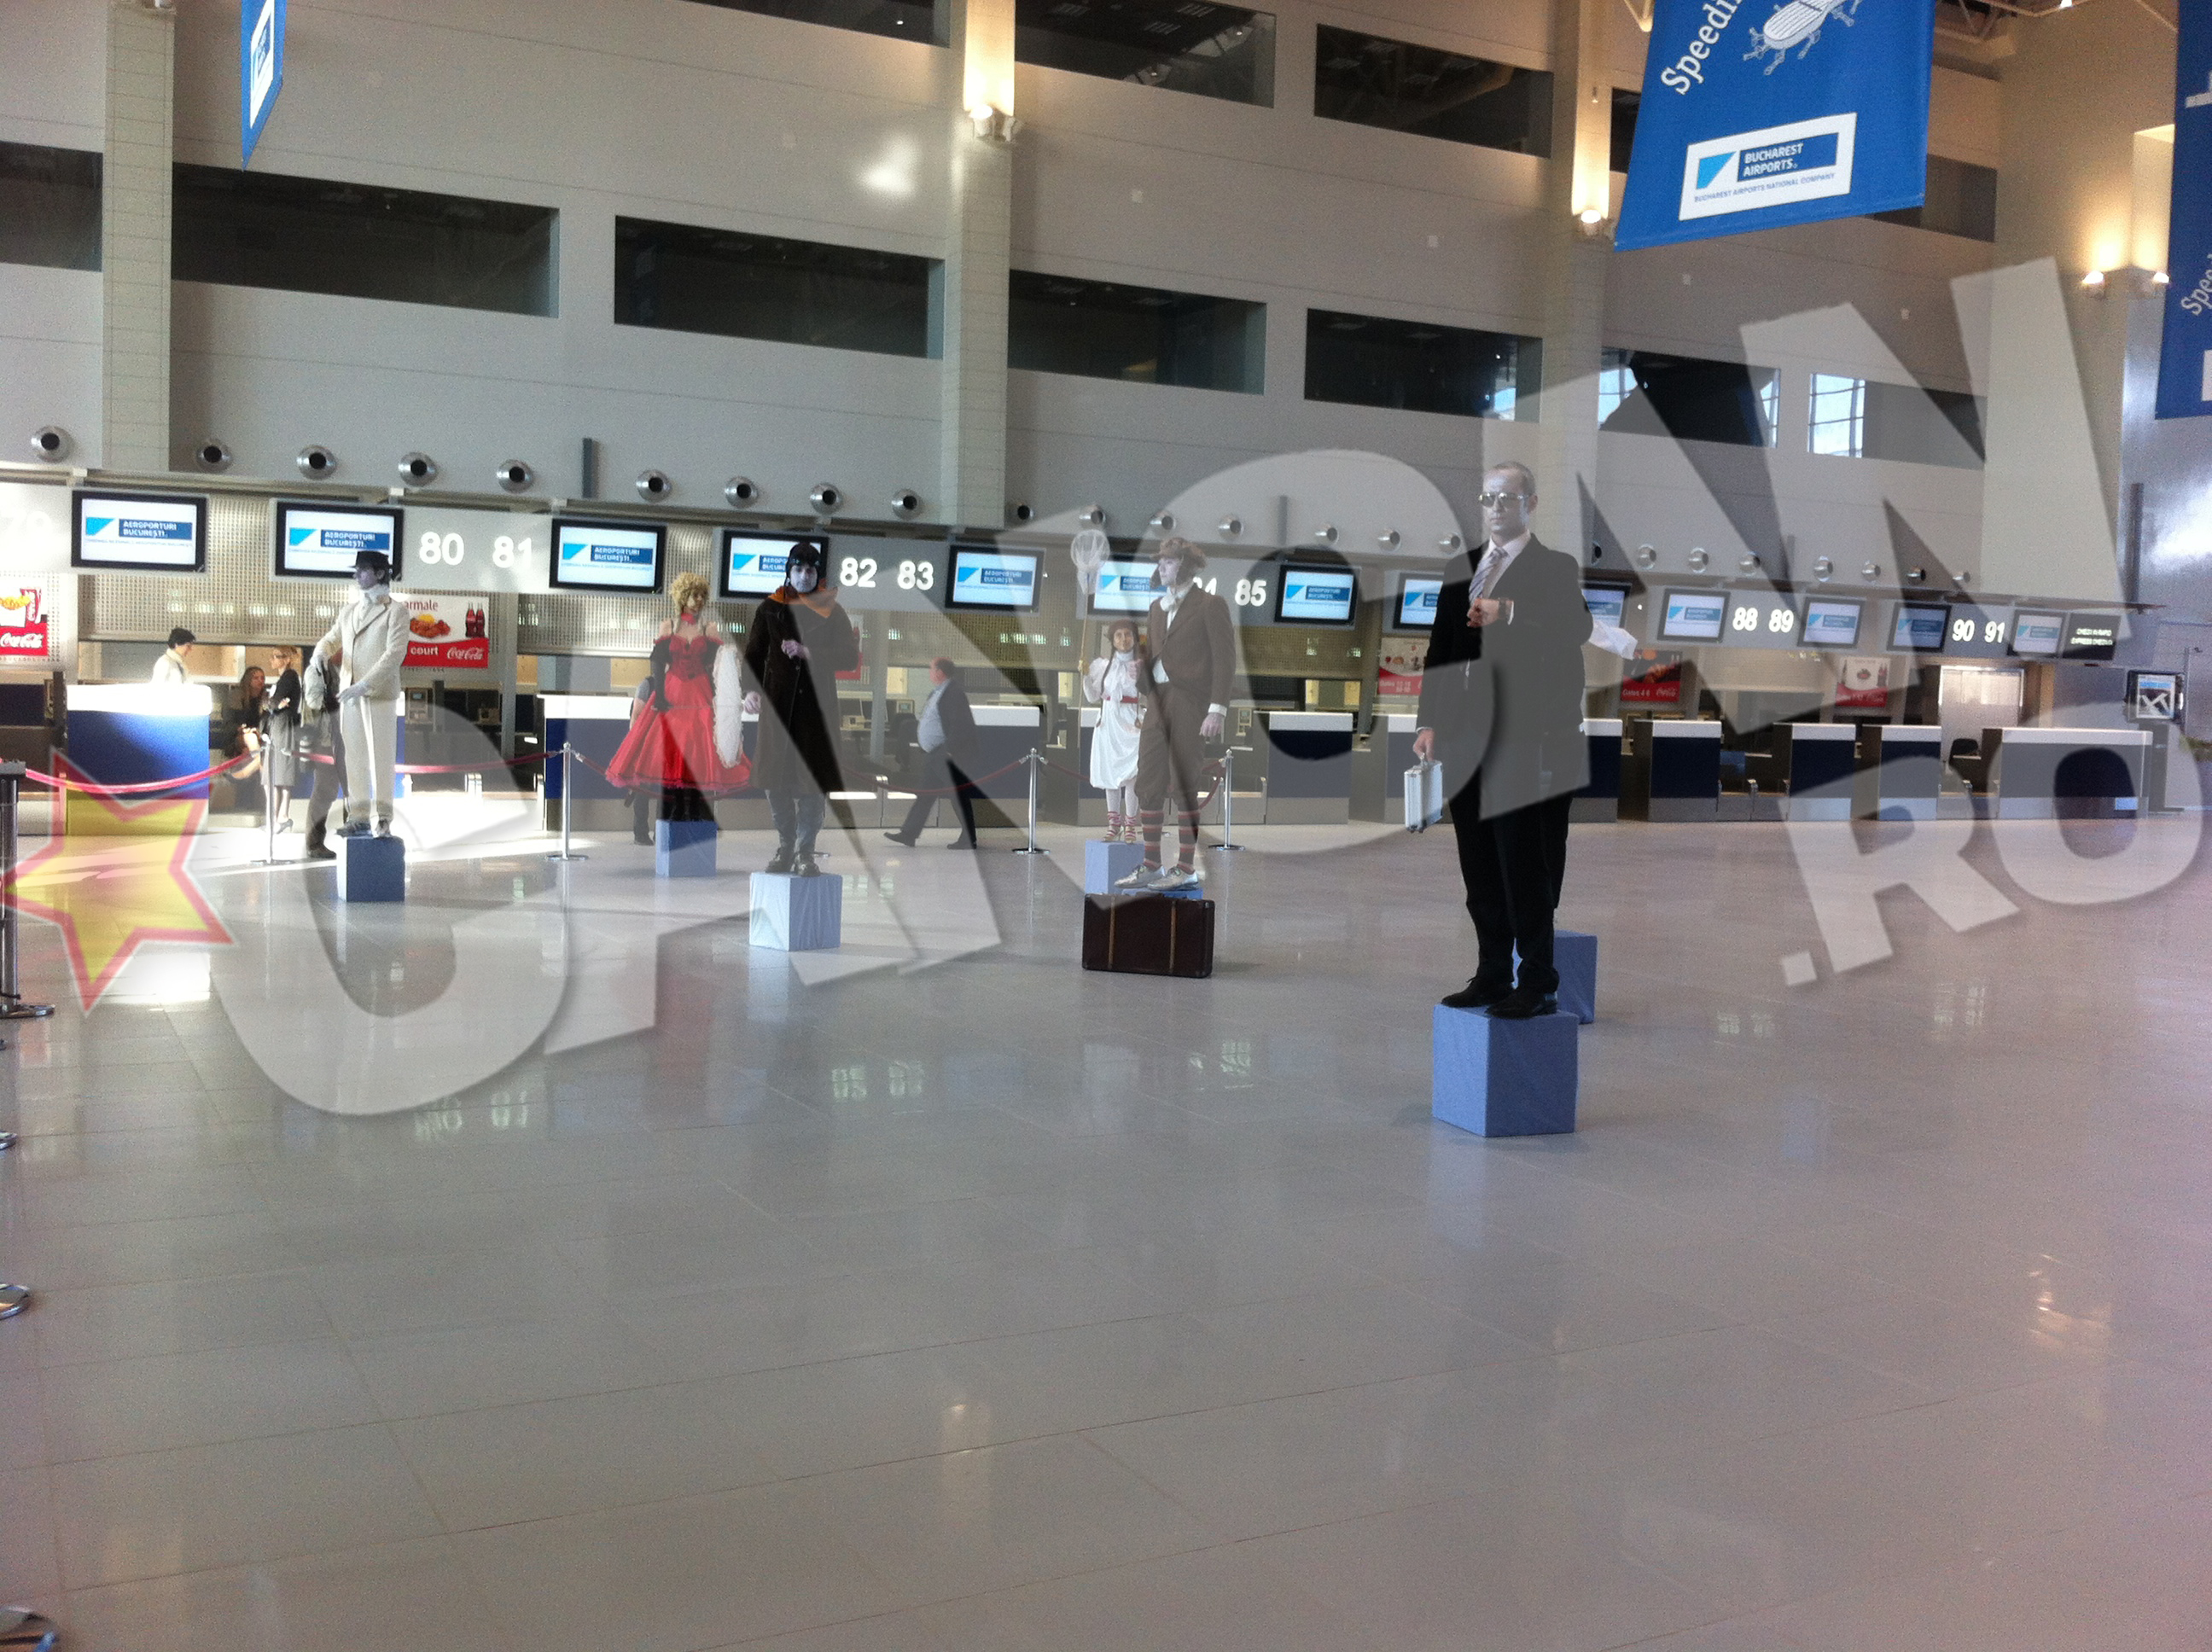 Deschis. Terminalul a fost inaugurat marti cu mare fast